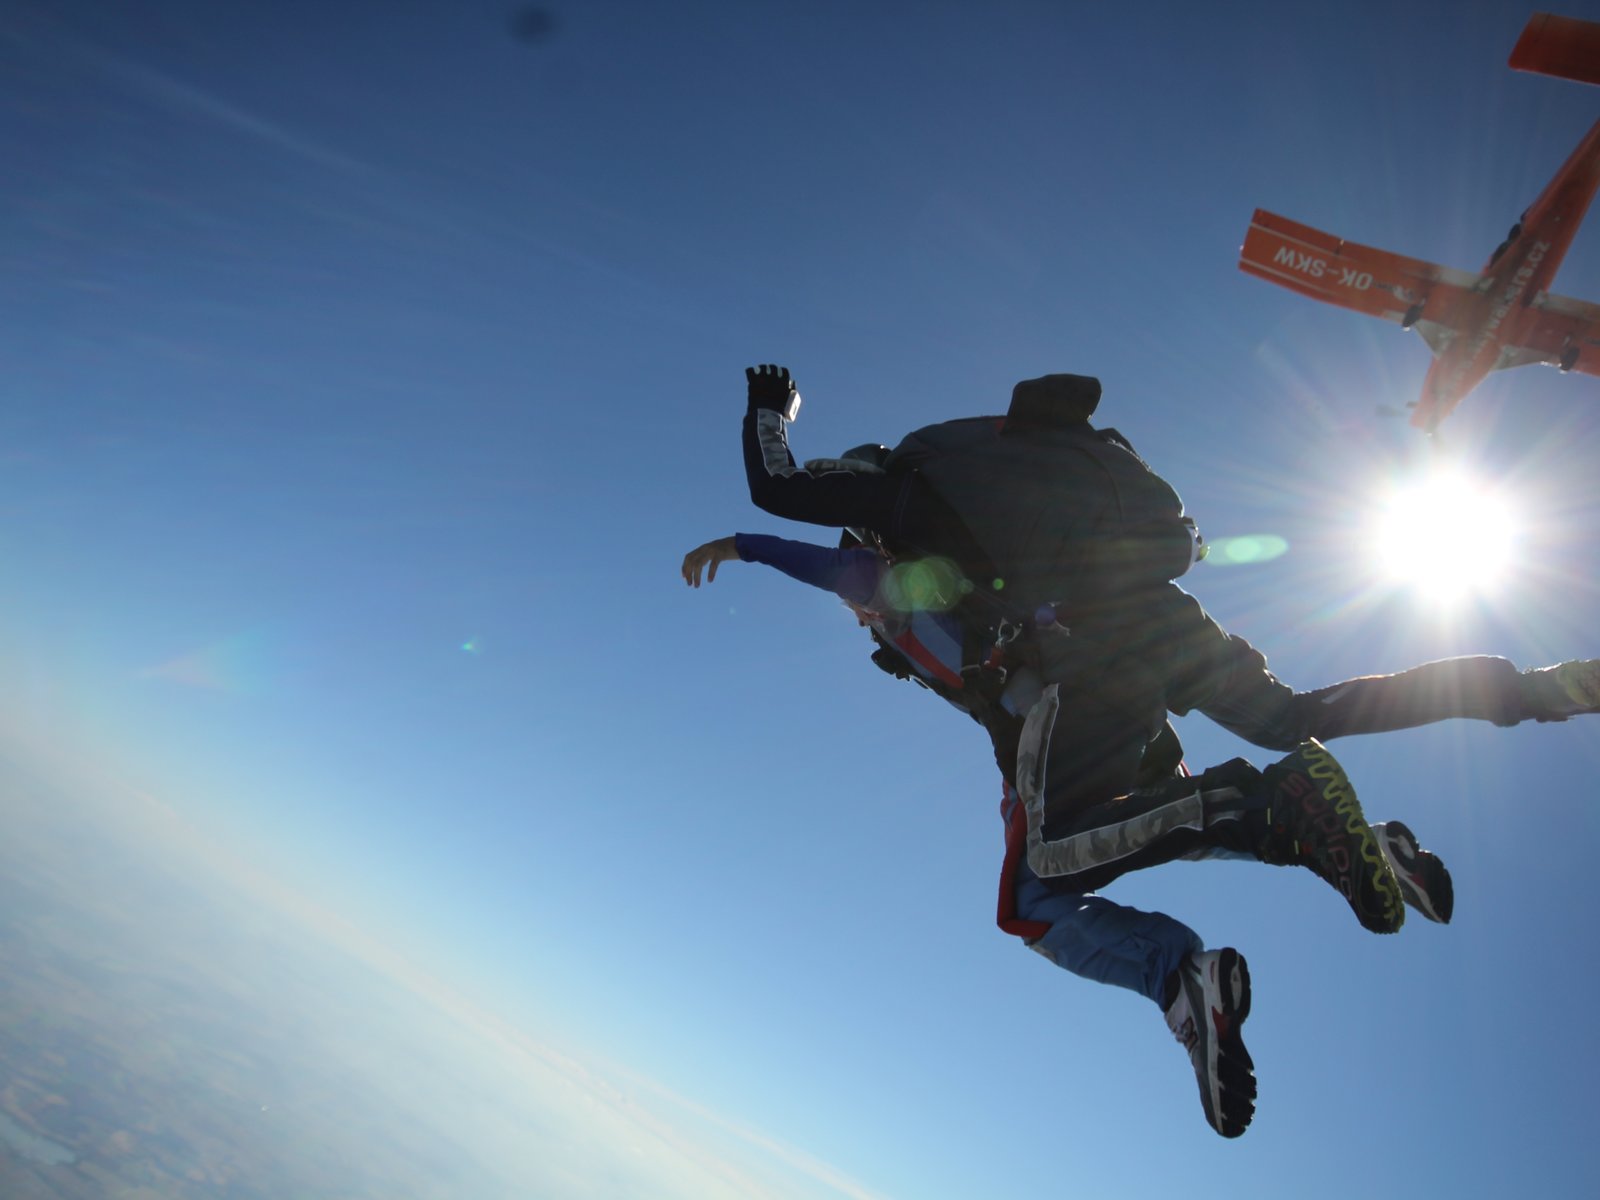 衝撃 富士山よりも高い場所からスカイダイビング チェコの上空からジャンプ 海外で初体験 Playlife プレイライフ